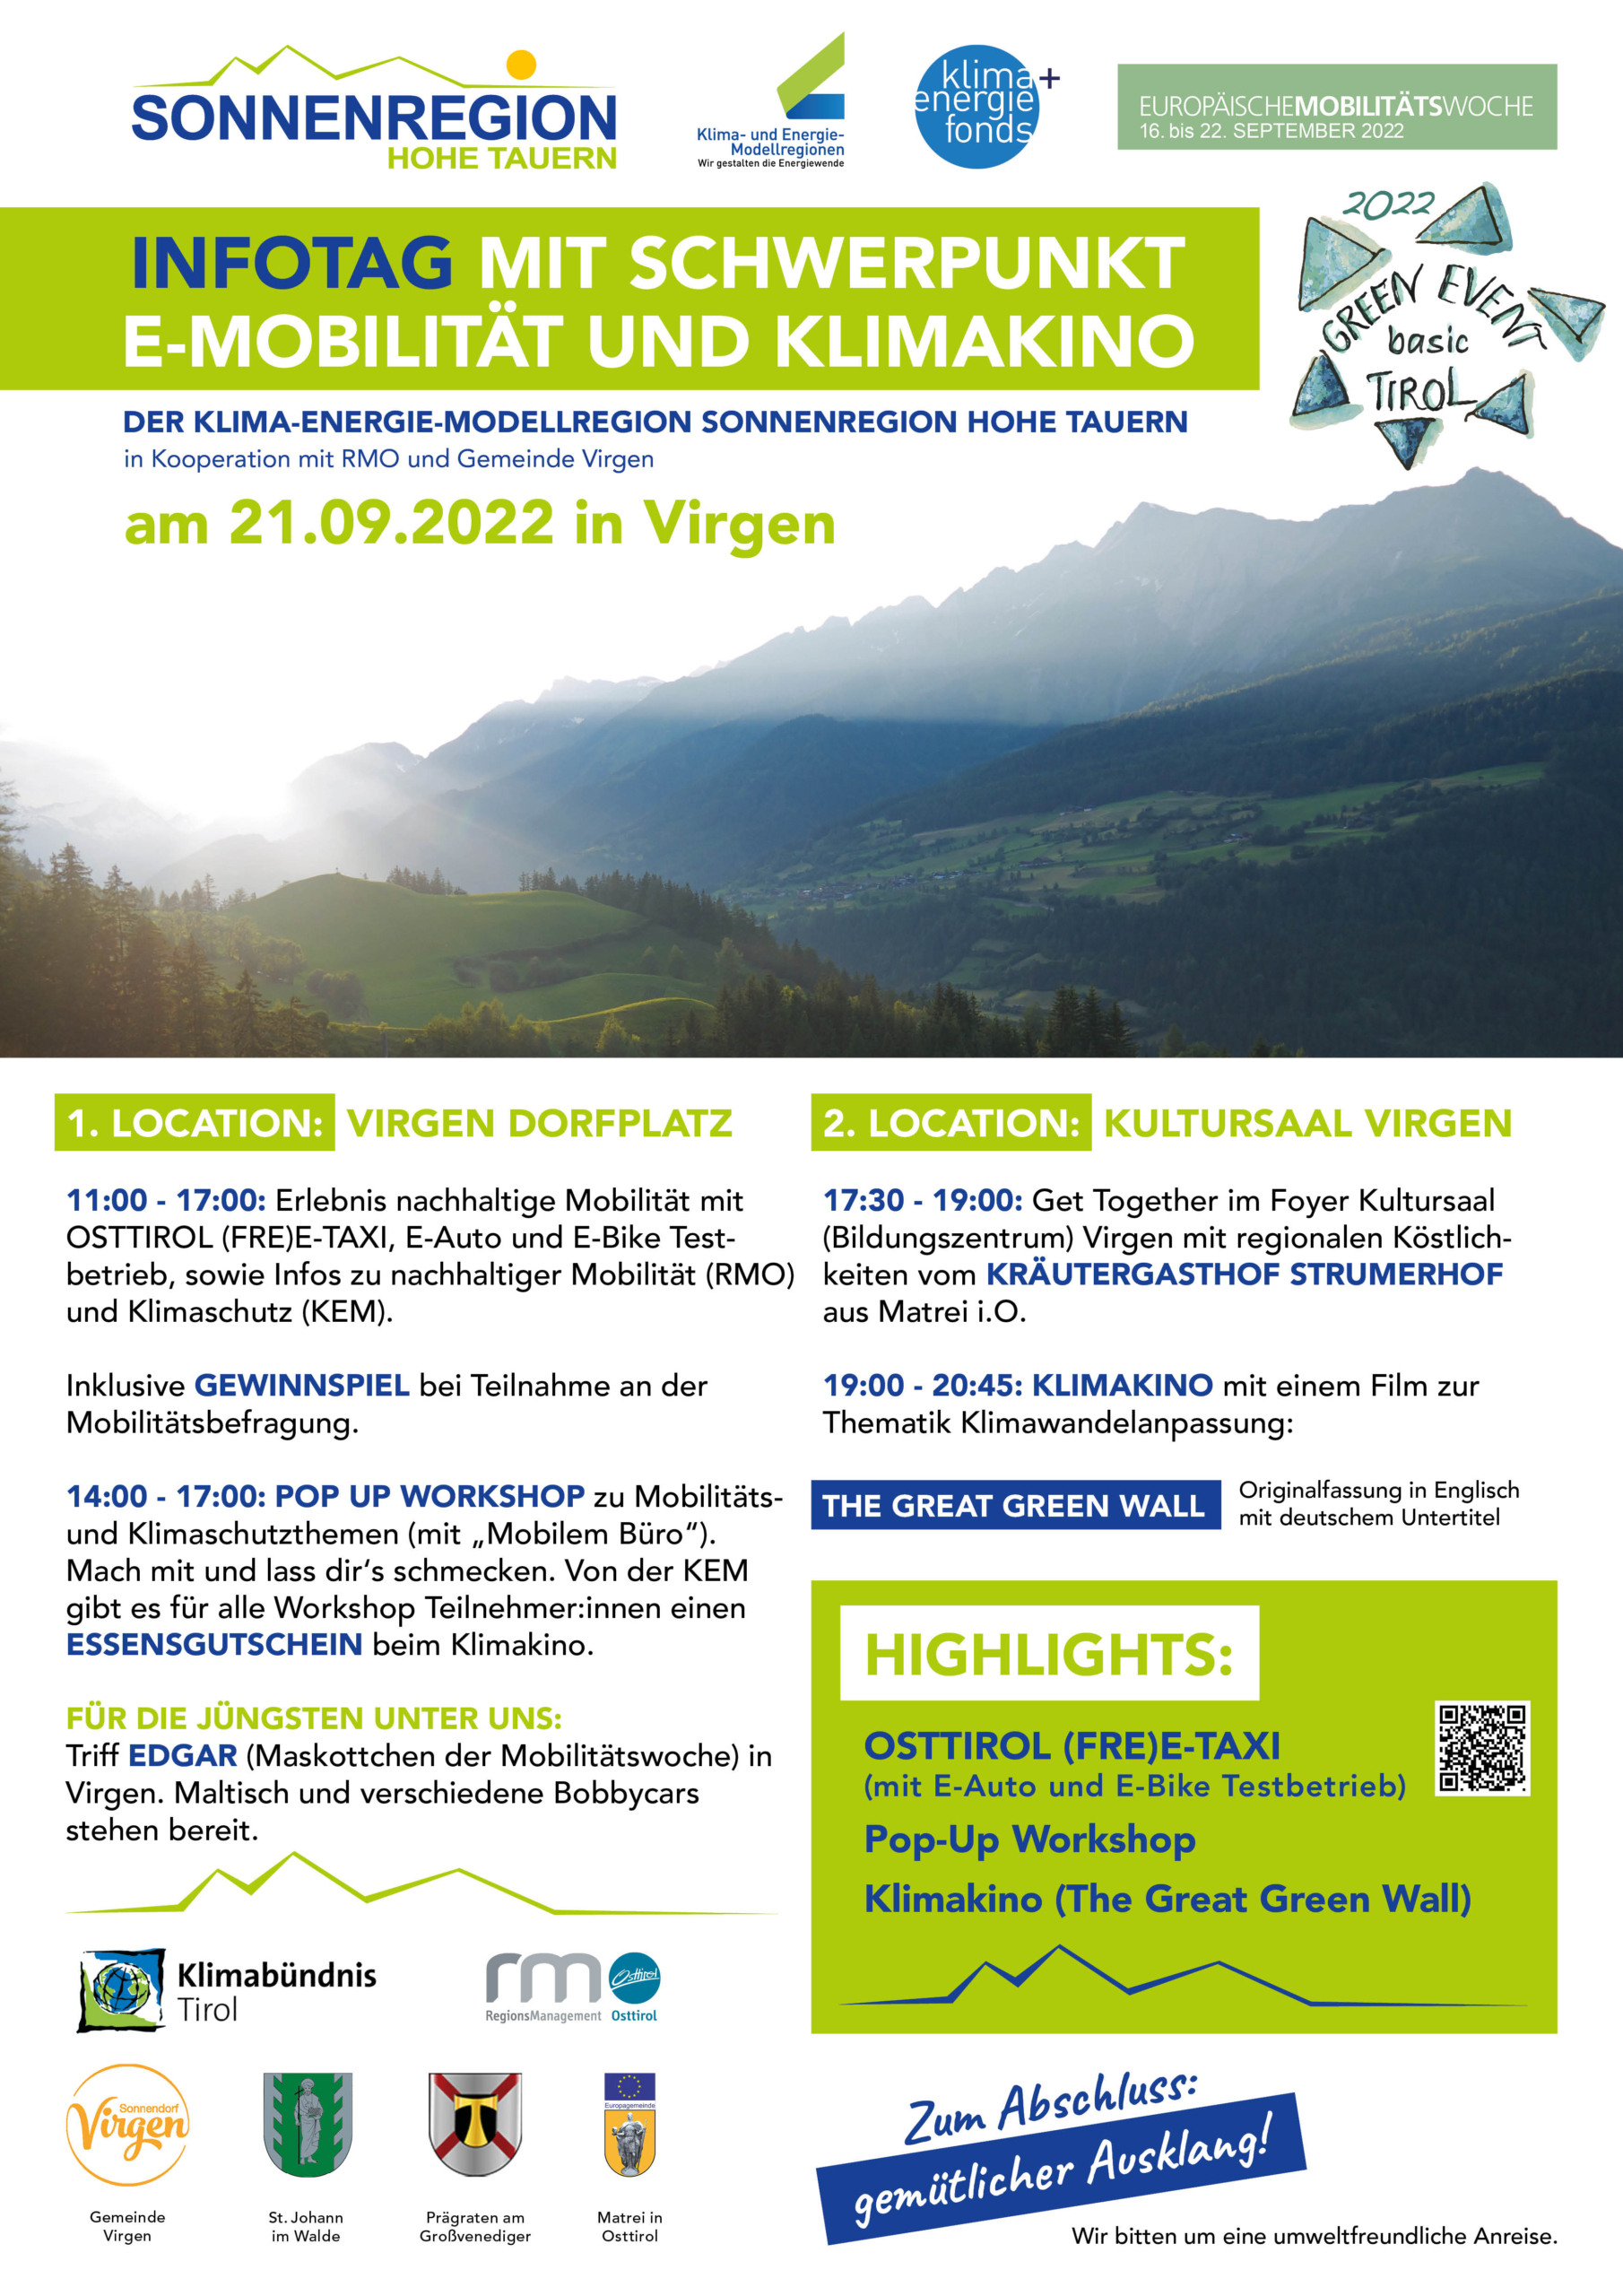 Green Event Basic Tirol: Infotag am 21.09.2022